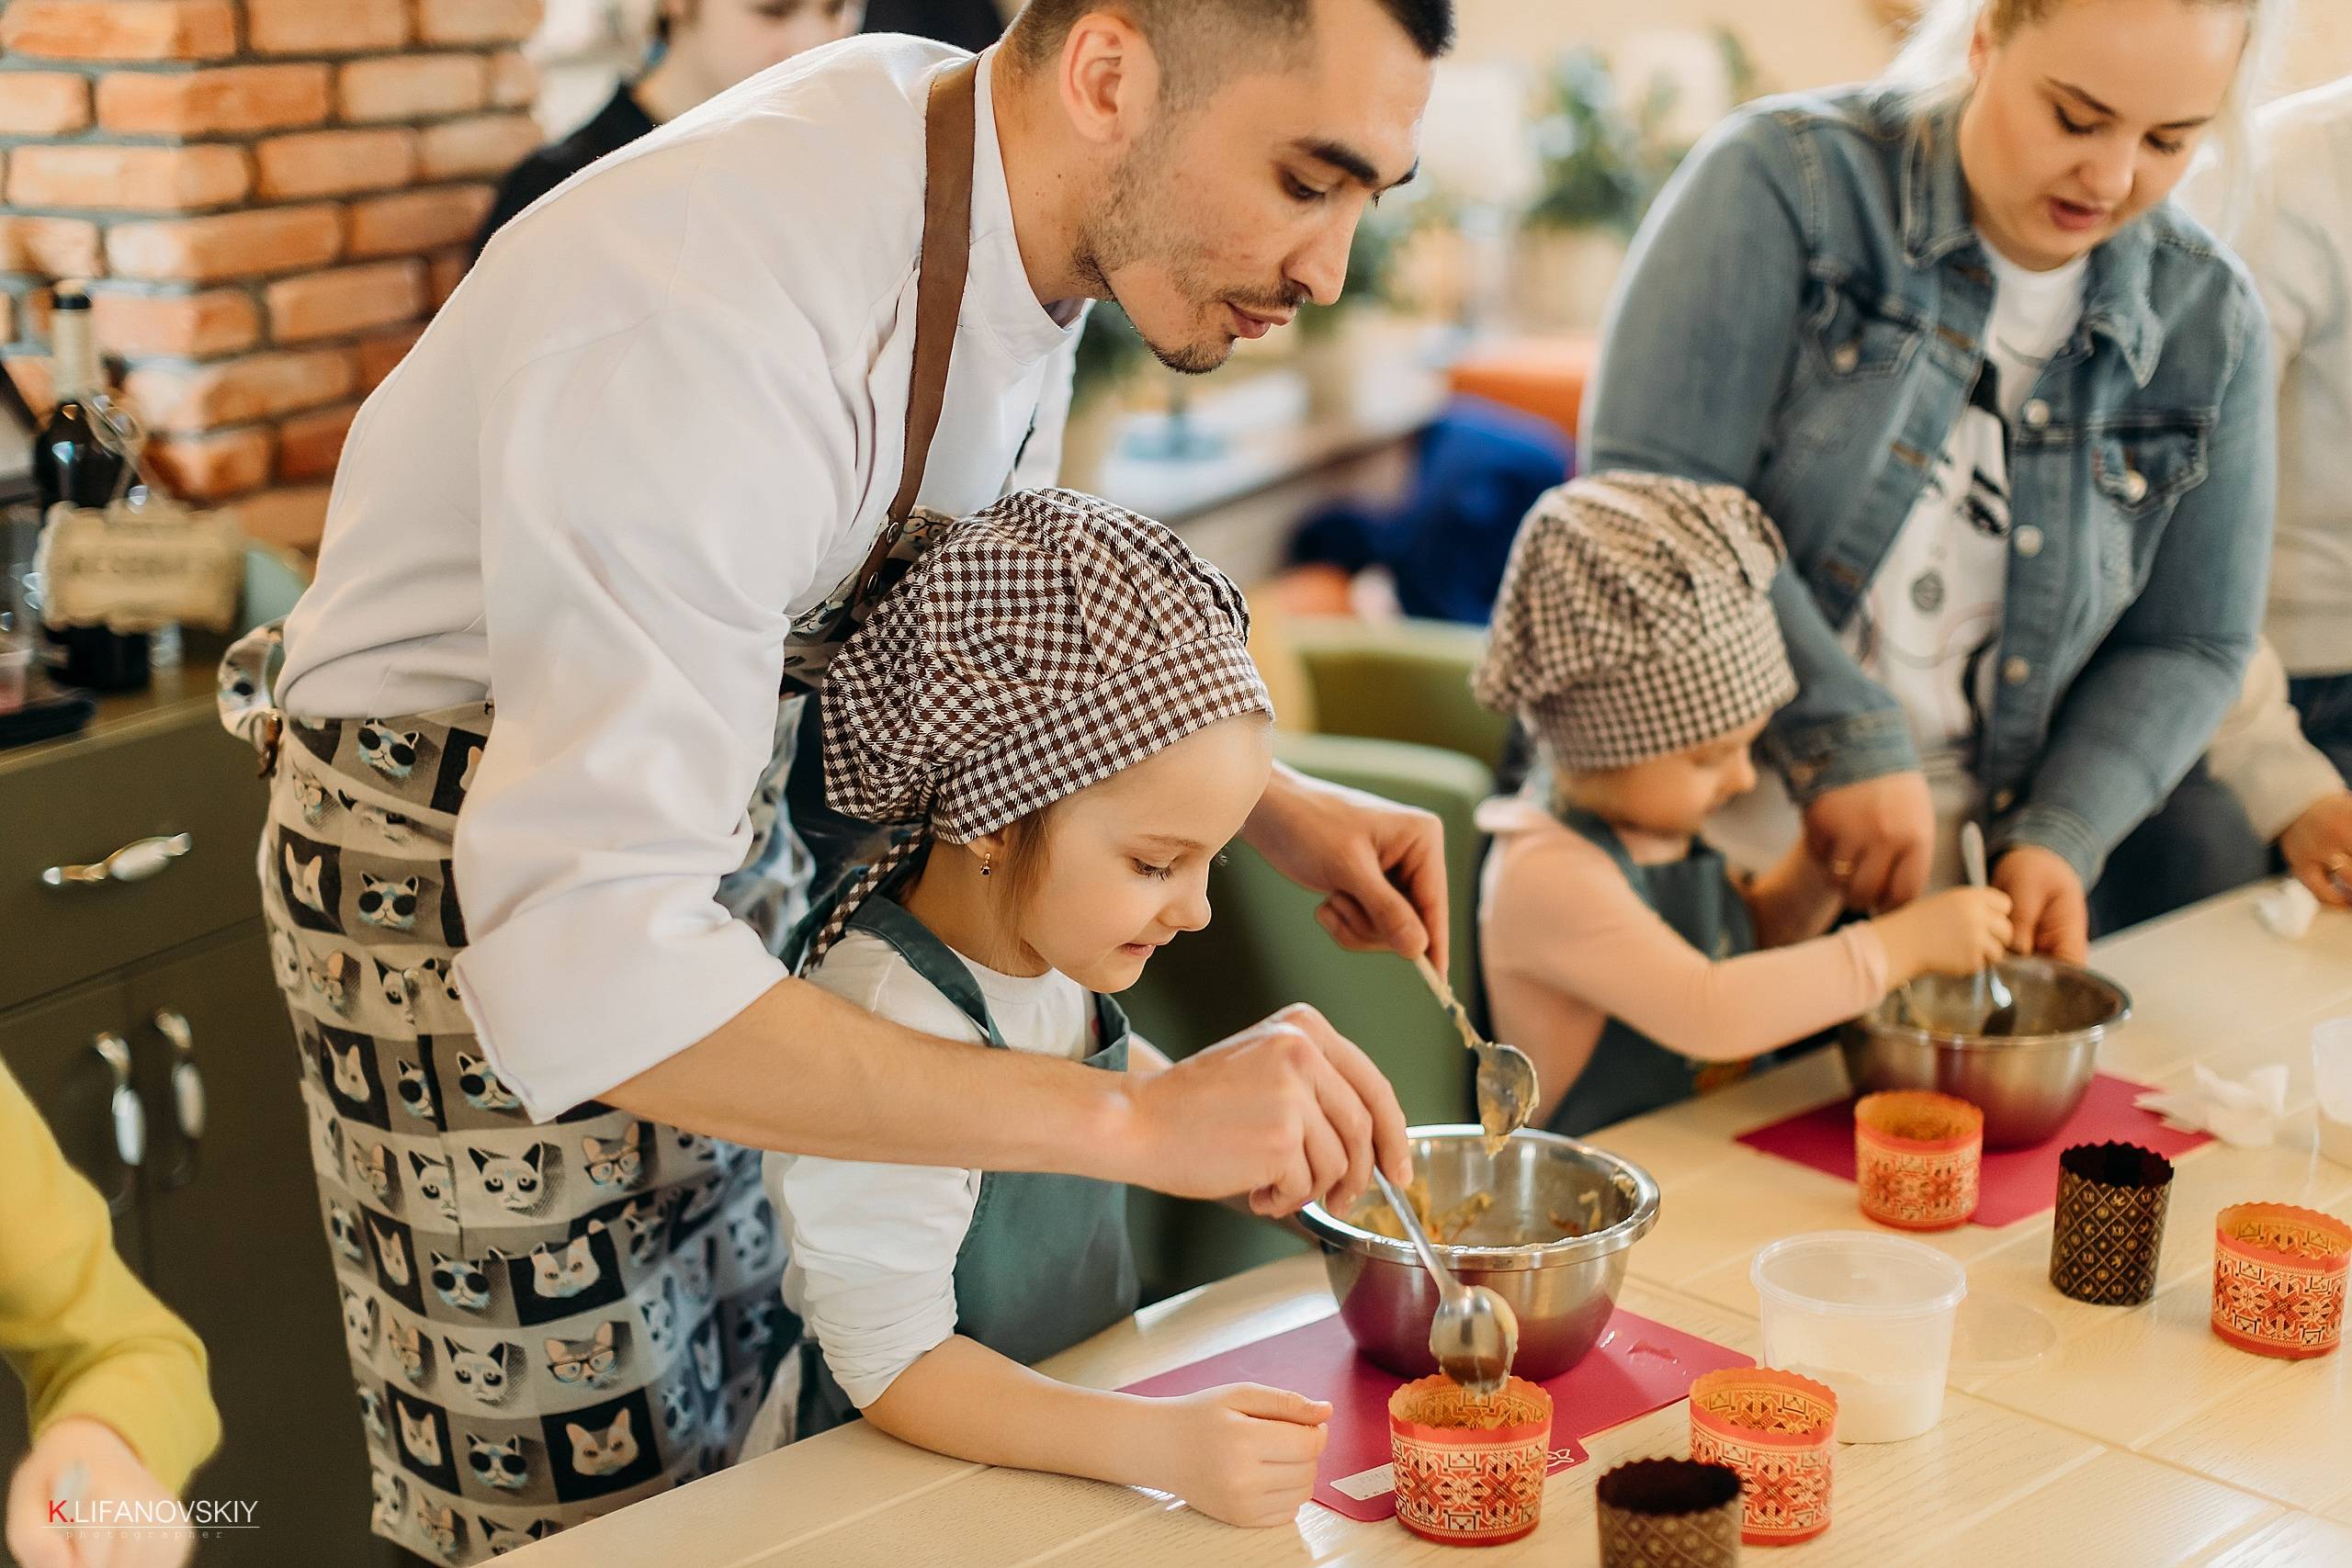 Как устроить необычный праздник детям, или кулинарный мастер-класс для детей
как устроить необычный праздник детям, или кулинарный мастер-класс для детей